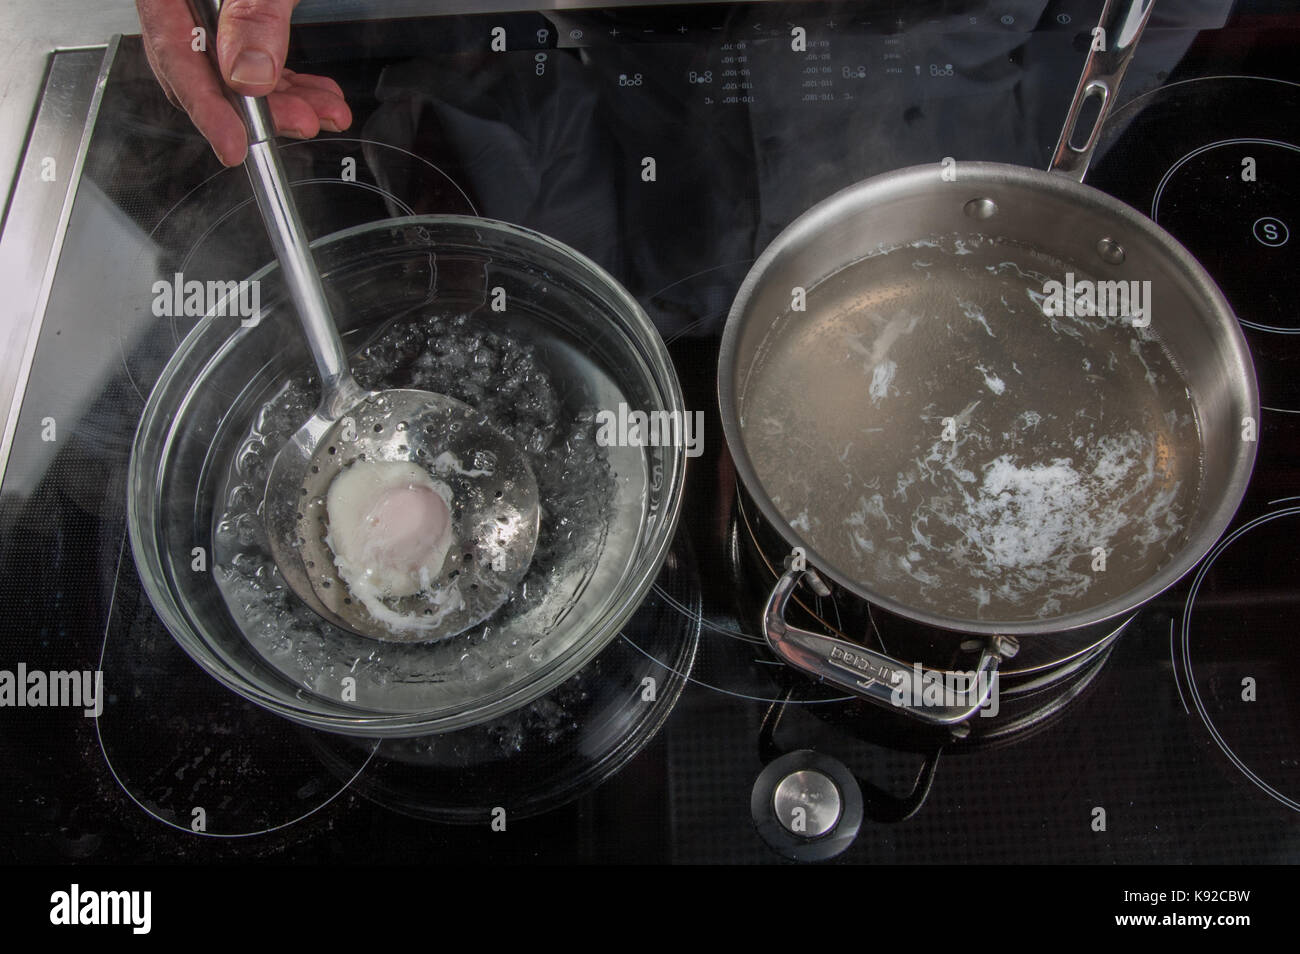 La preparazione di uovo in camicia, ristorante allegria, Chef Alessandro Tschebull, Amburgo, Germania Foto Stock